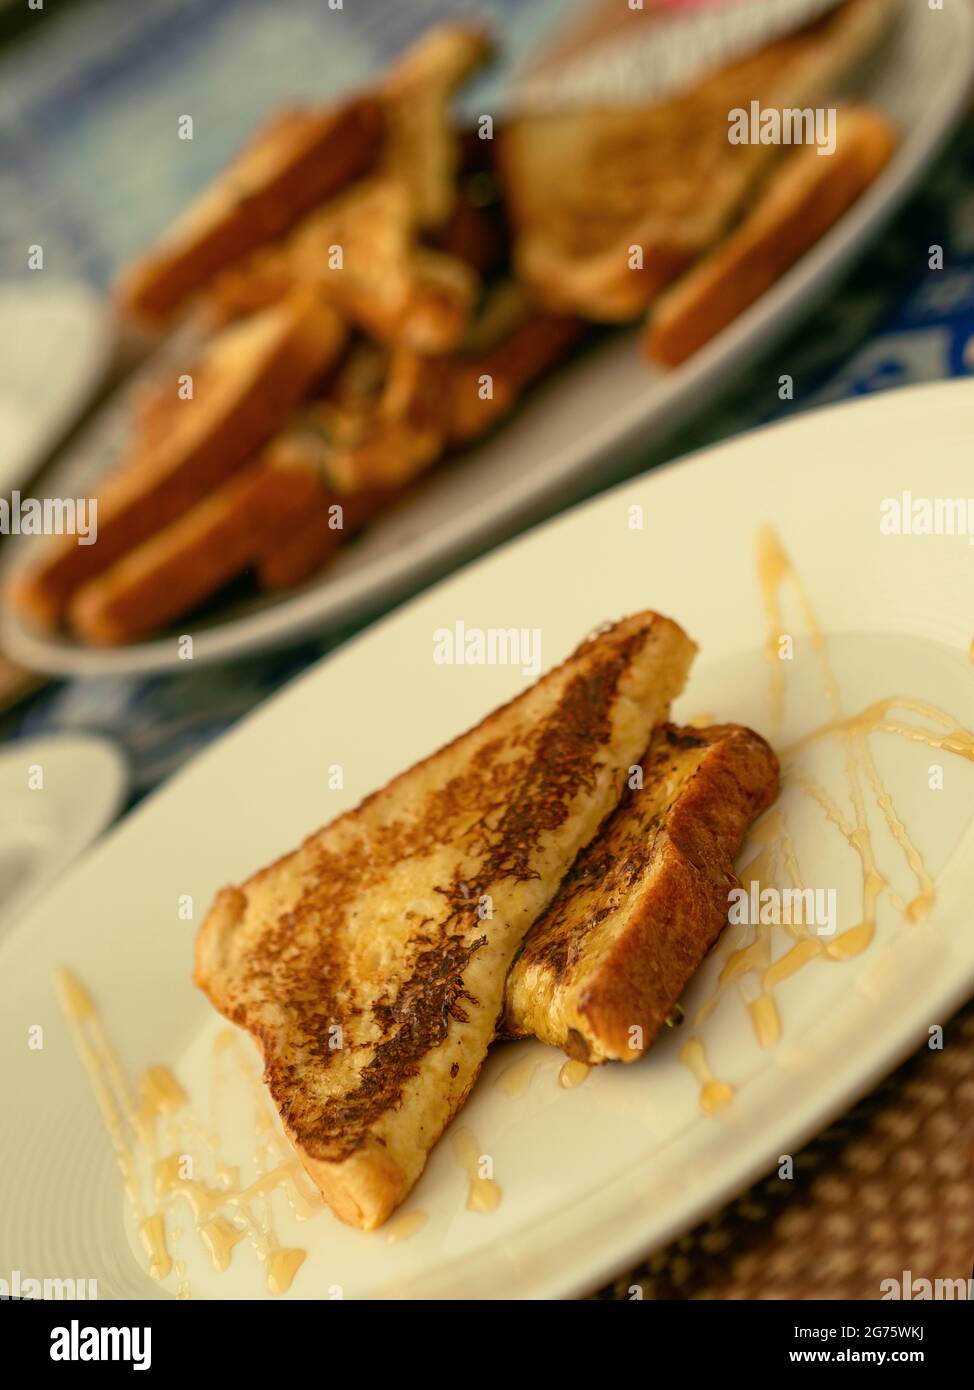 Due toast alla francese serviti con miele su un piatto bianco per colazione o brunch, sullo sfondo una pila di toast alla francese. Foto Stock